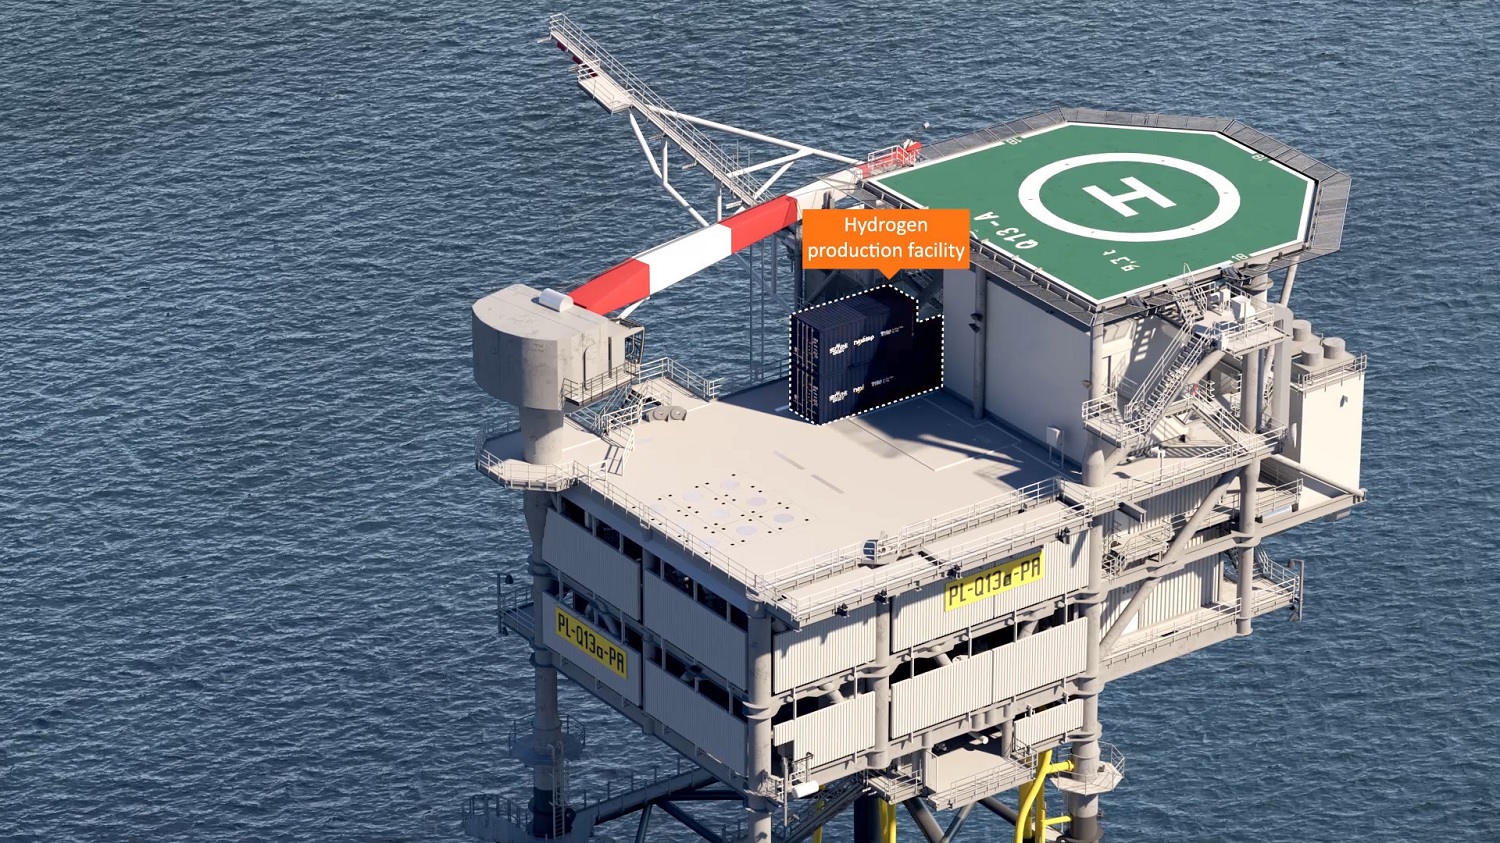 Netherlands grants PosHYdon offshore green hydrogen project